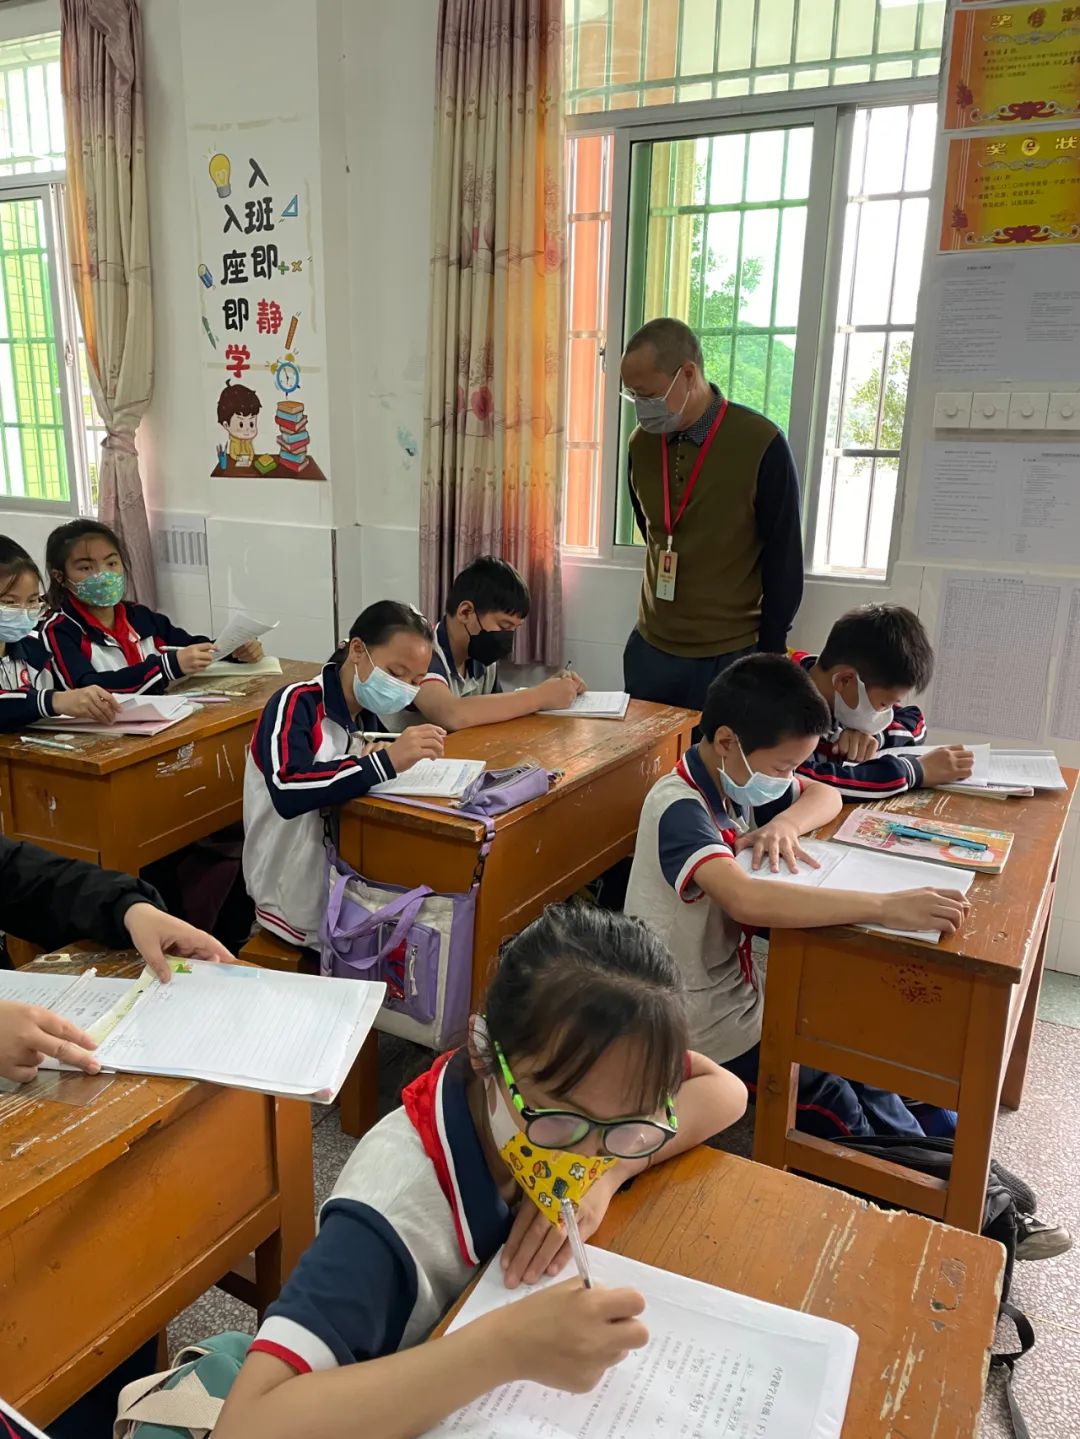 大埔县人民政府教育督导室对茶阳镇中心小学进行教育督导评估